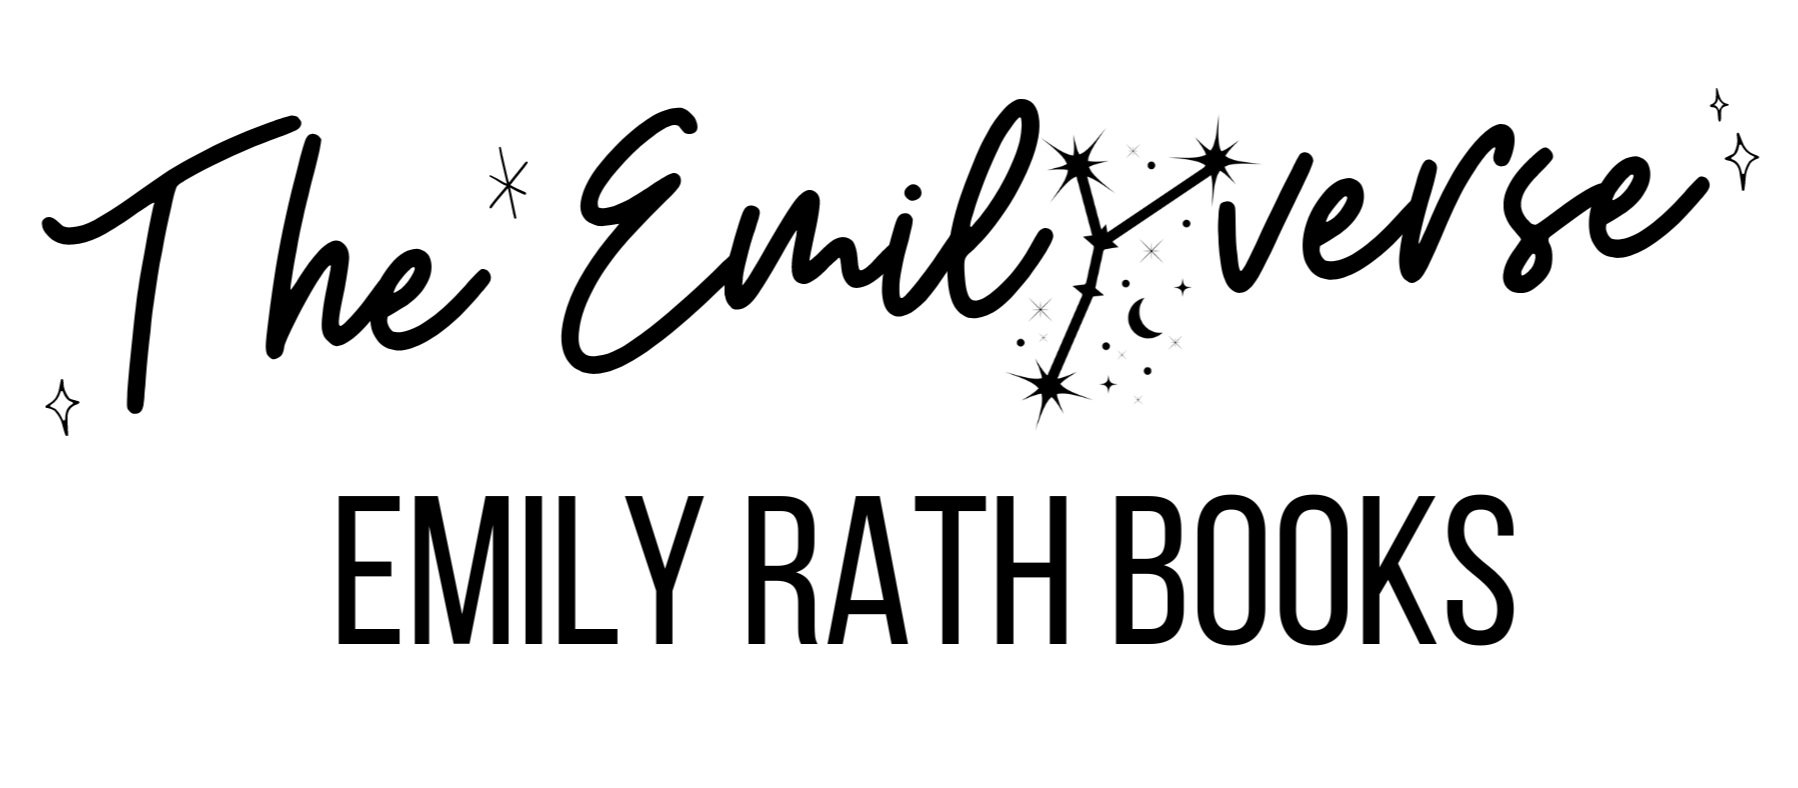 Emily Rath